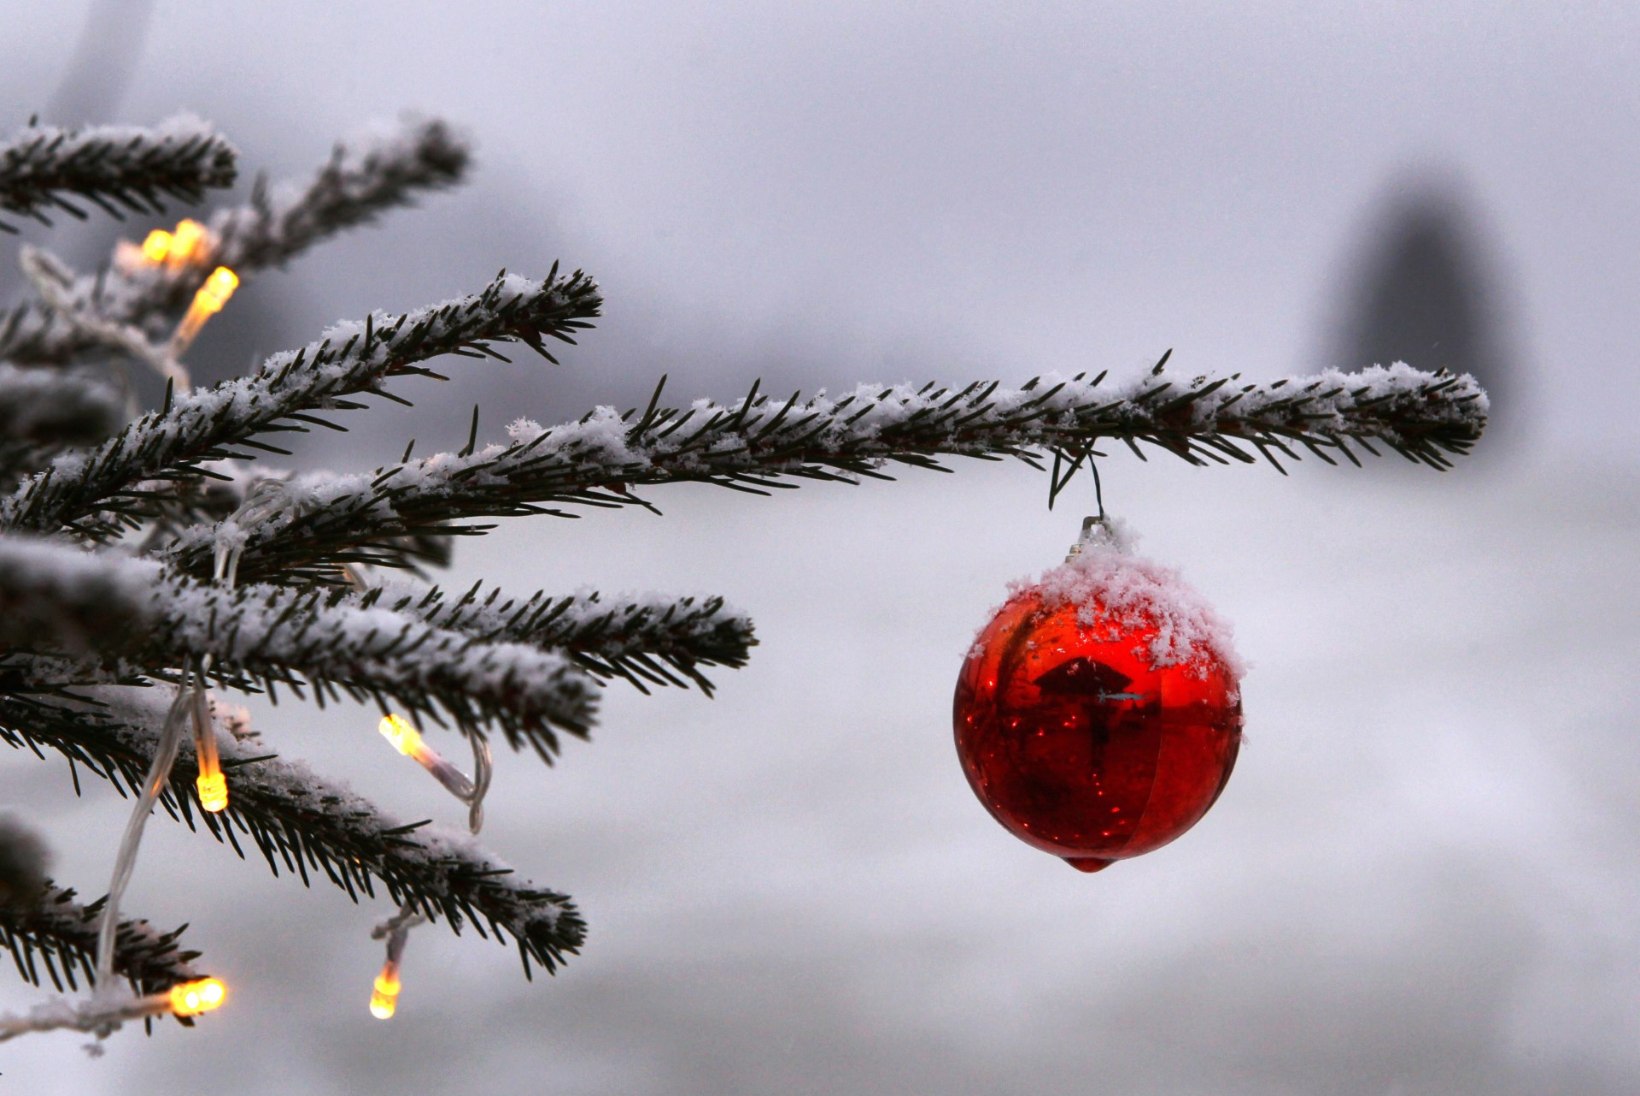 PÜHADERÕÕM: Ilmaprognoos lubab jõuludeks valget lumevaipa